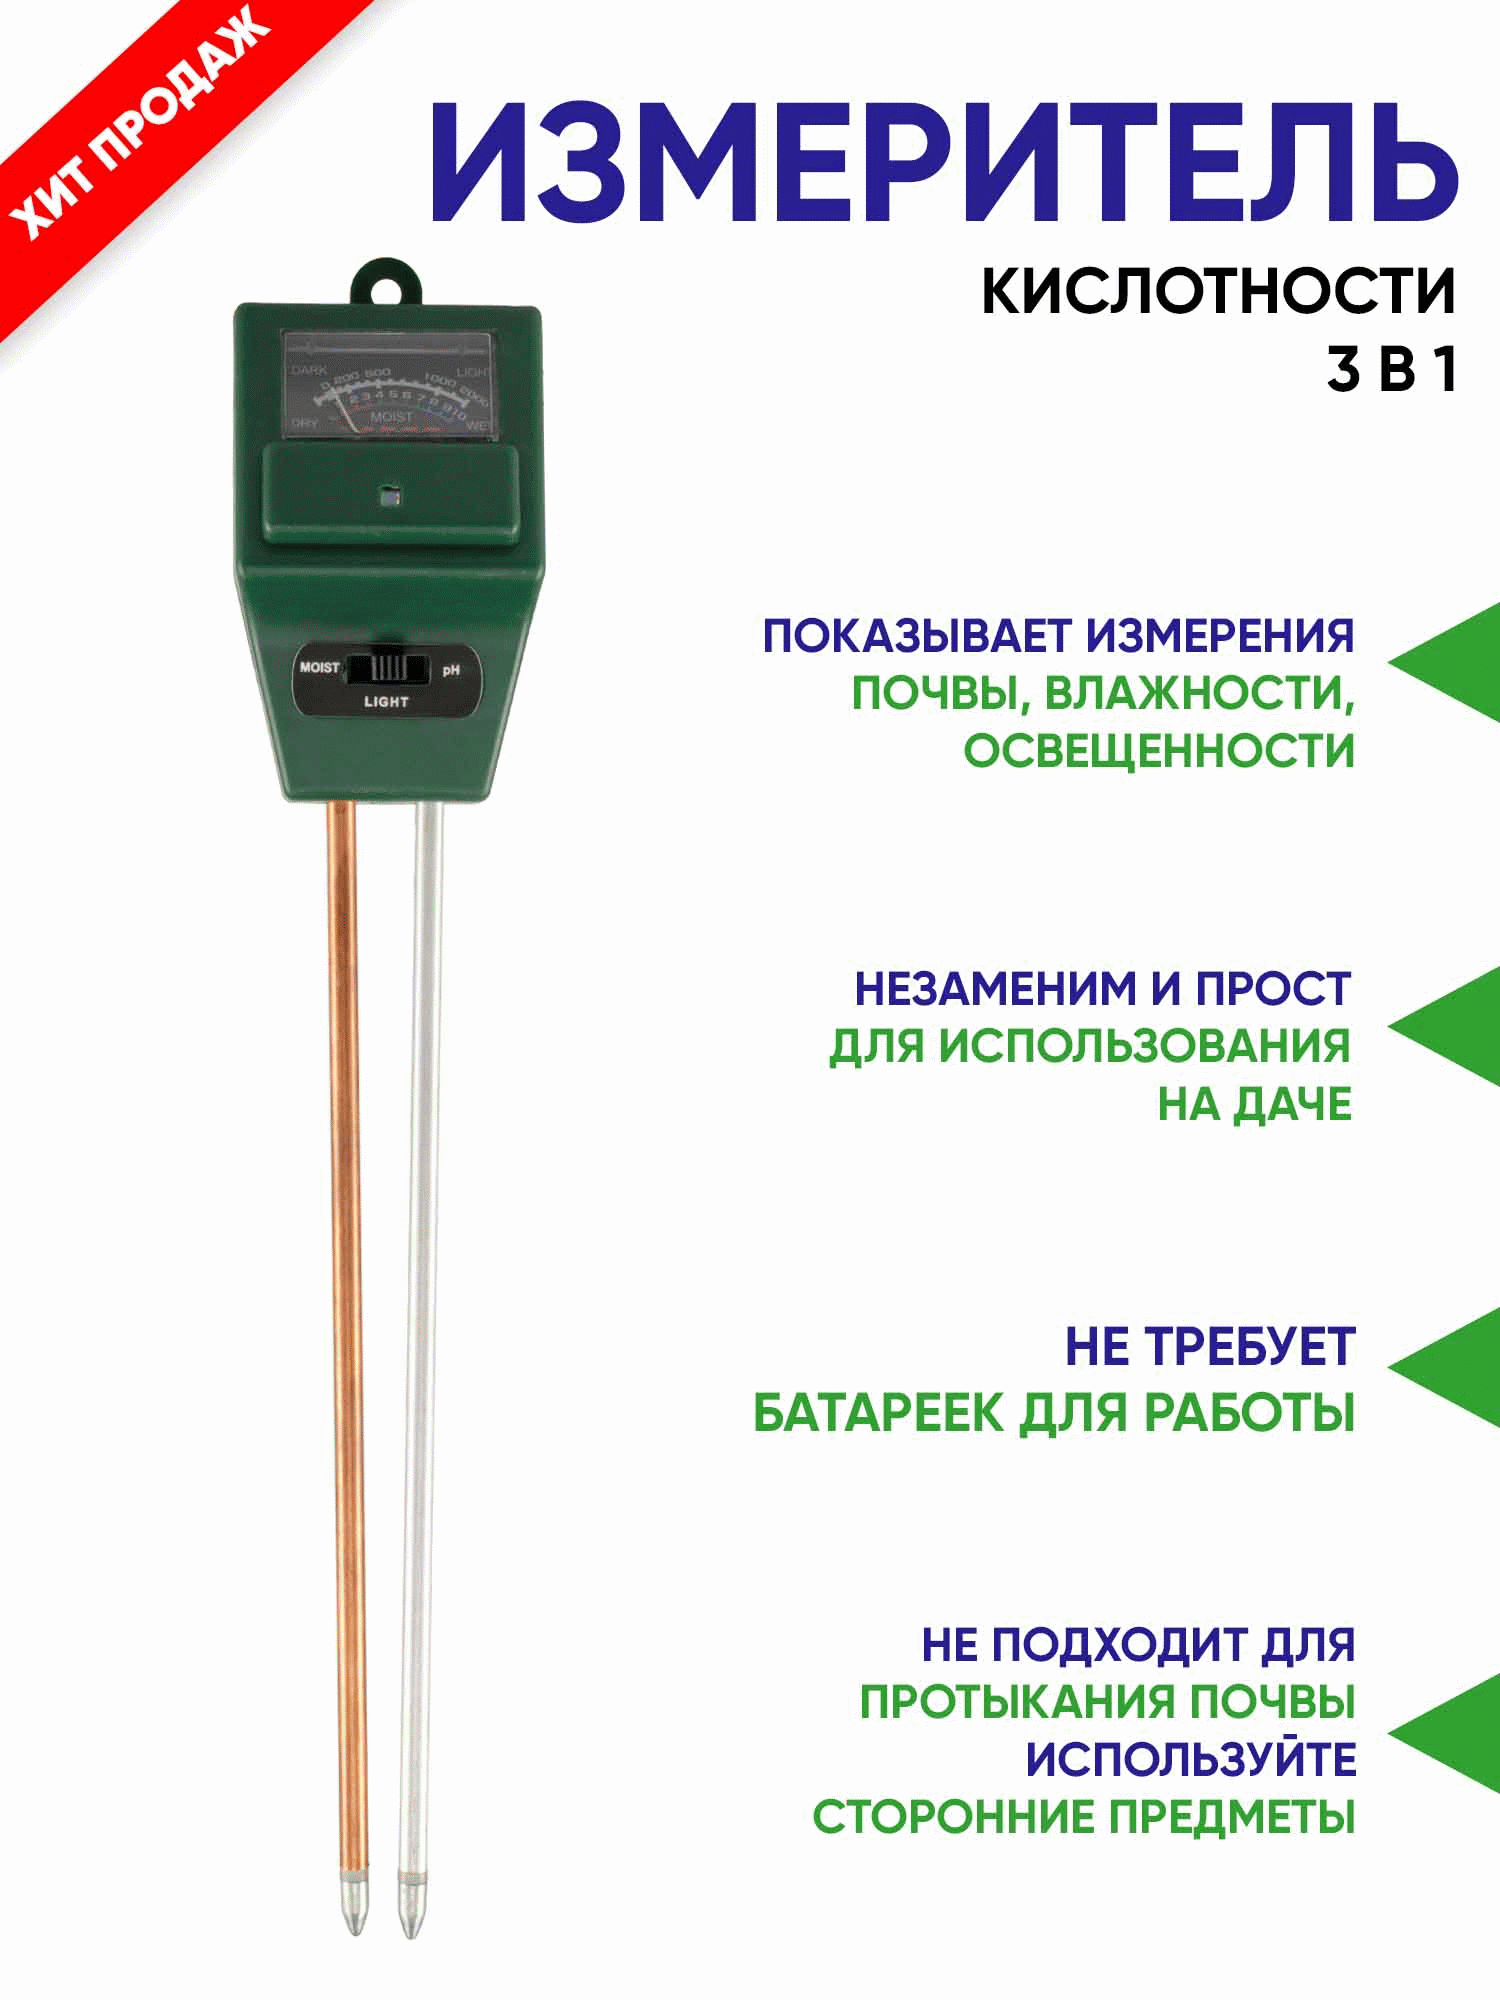 Прибор-щуп ETP-301 поможет любому самостоятельно измерить уровни освещенности, влажности и кислотности почвы